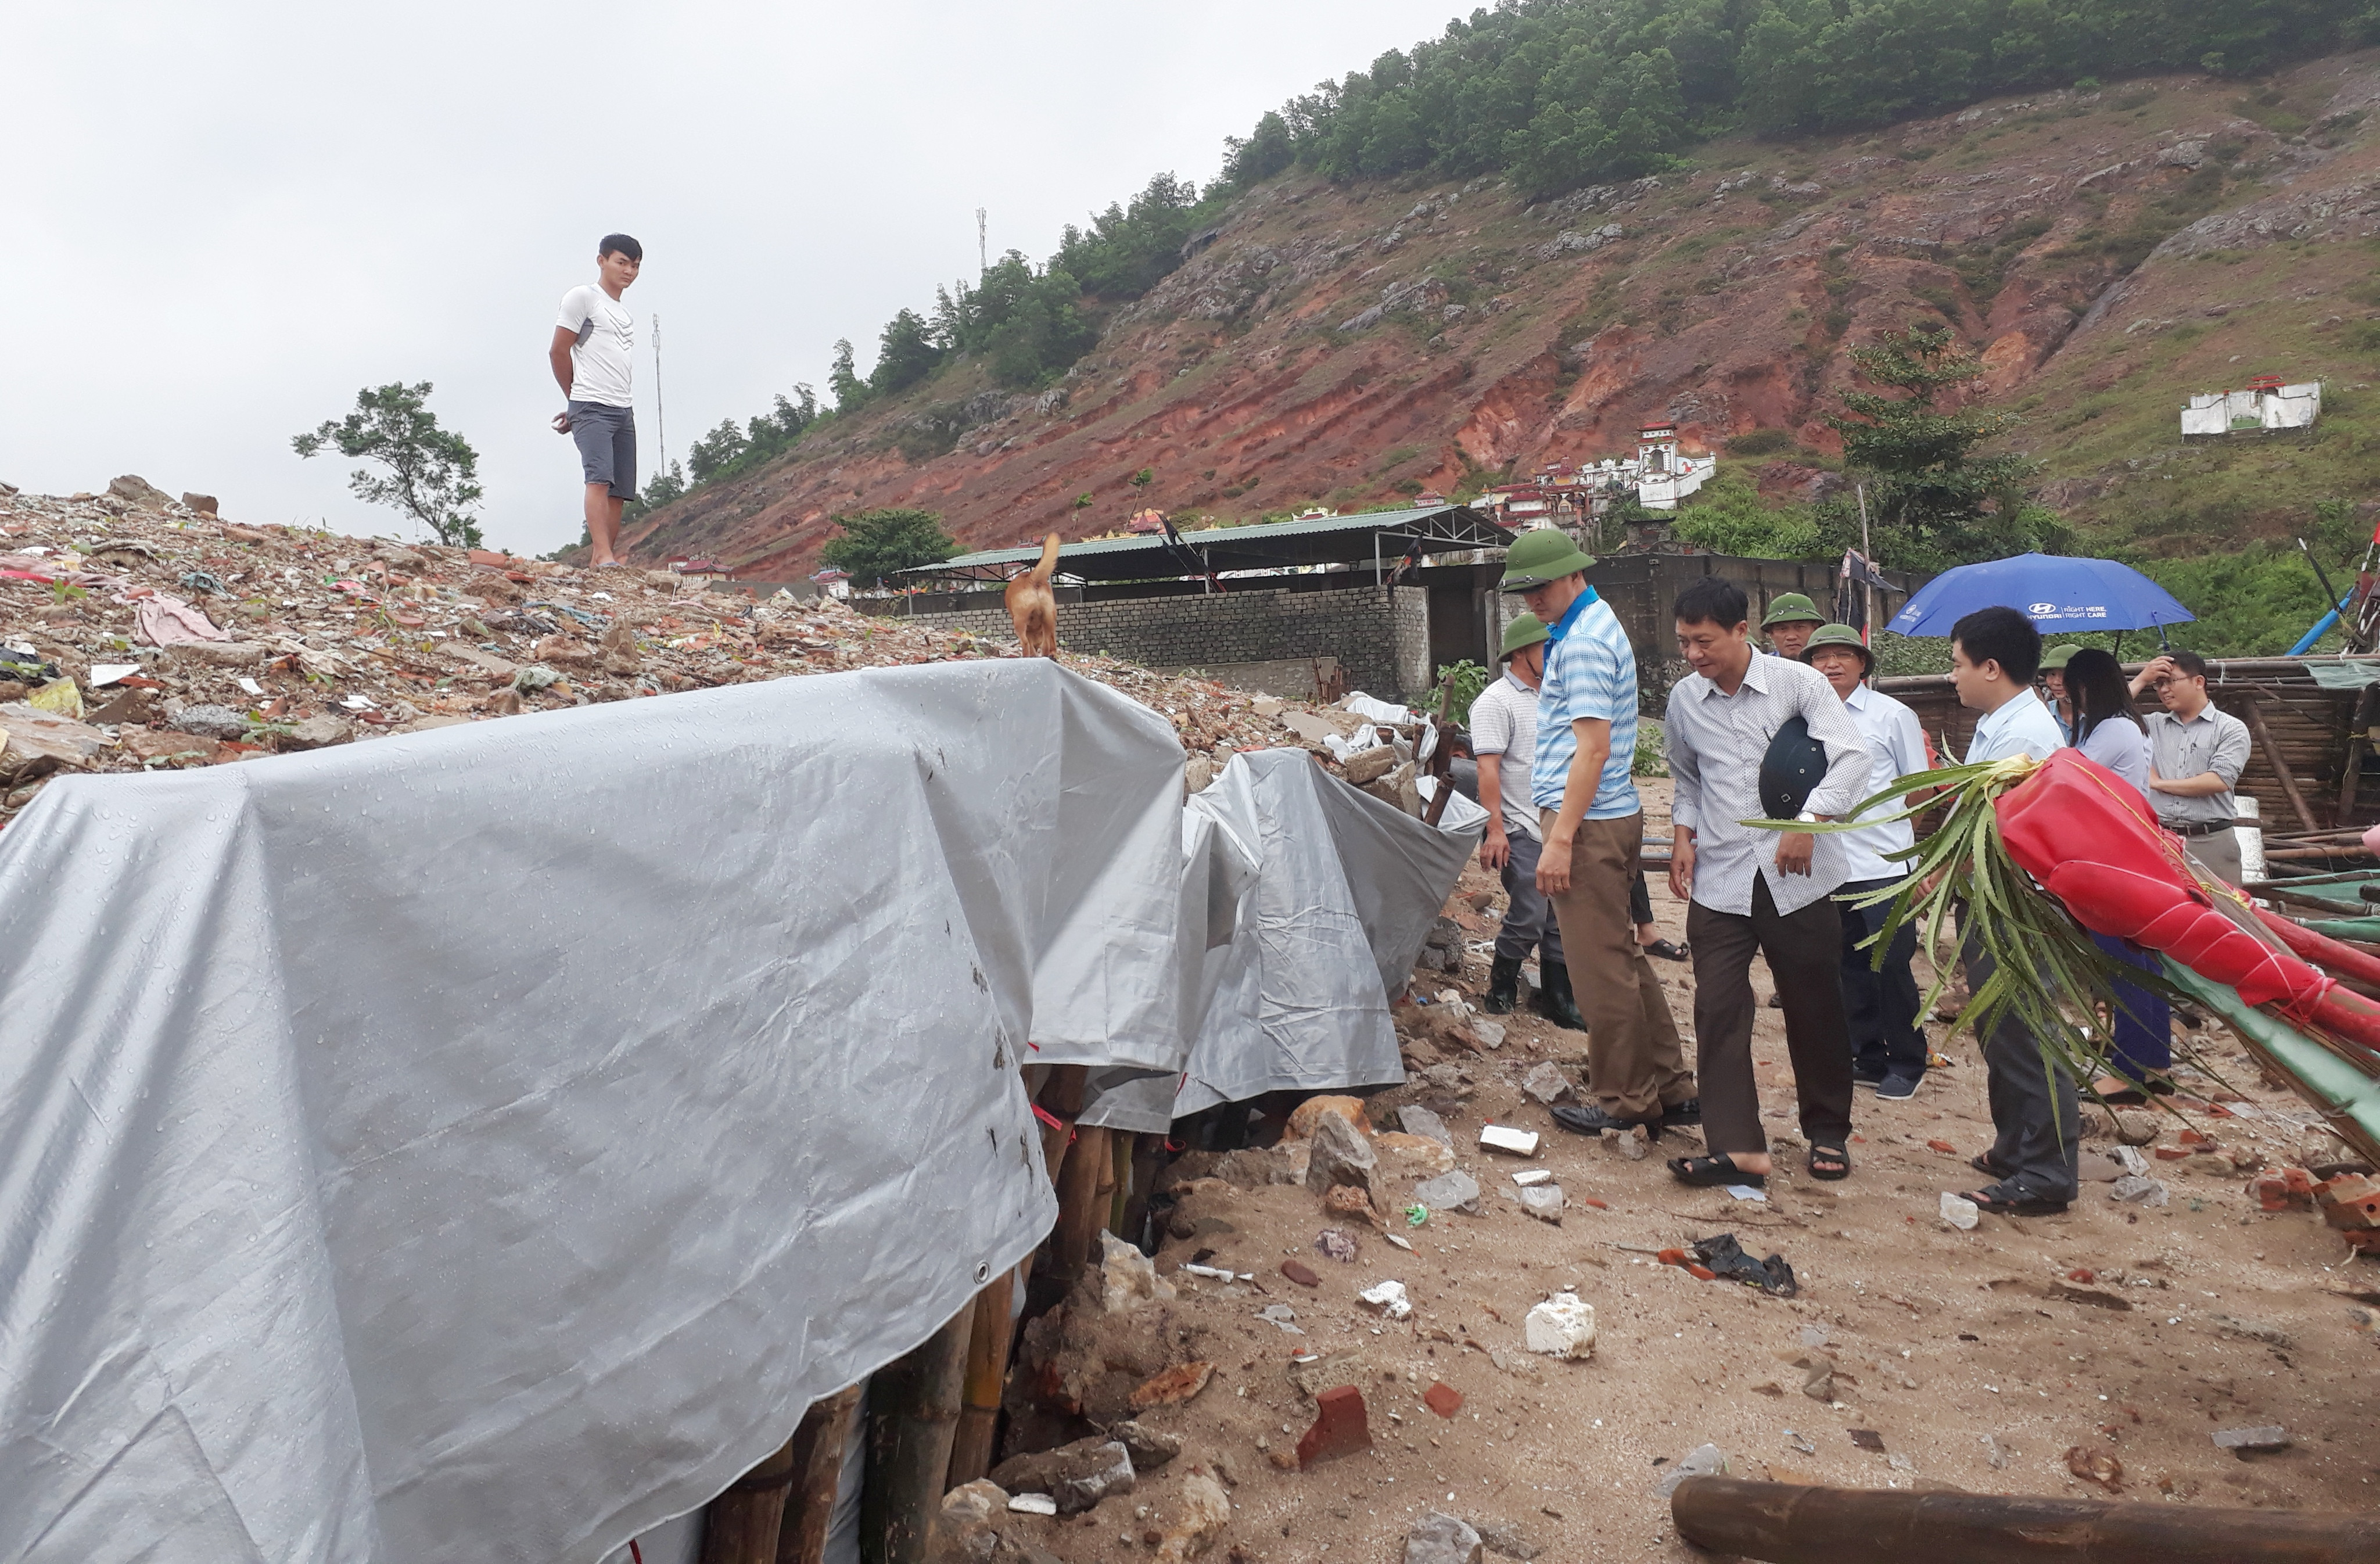 Để ứng phó với các cơn bão gây ra, huyện Quỳnh Lưu đang chỉ đạo các xã vùng biển khẩn trương hoàn thiện việc gia cố, bảo vệ chân đê. Ảnh: Việt Hùng.